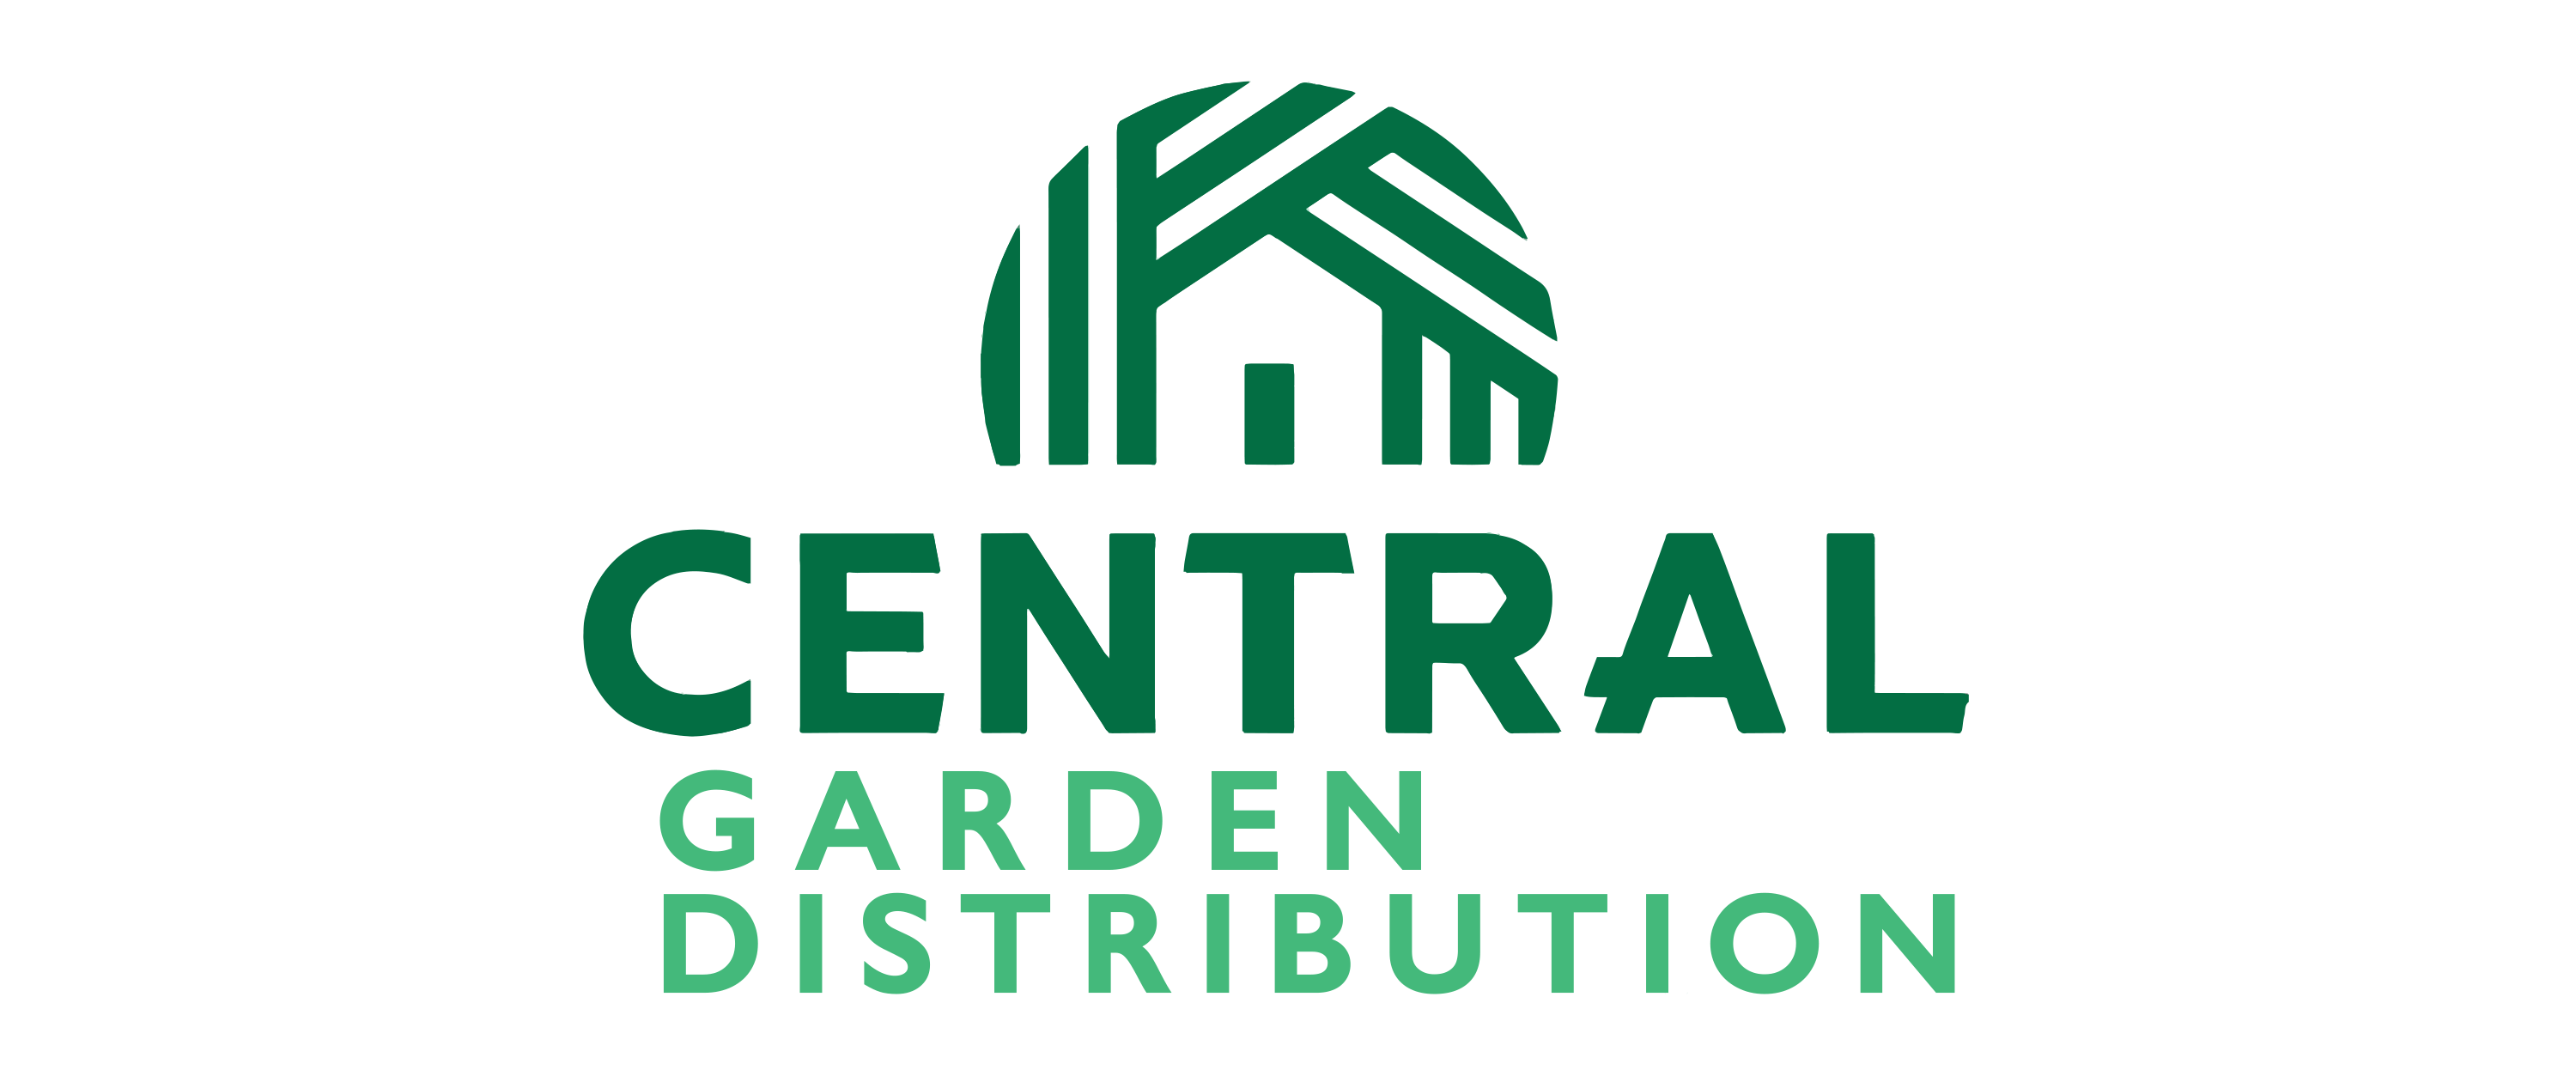 Central Garden Distribution Company Logo